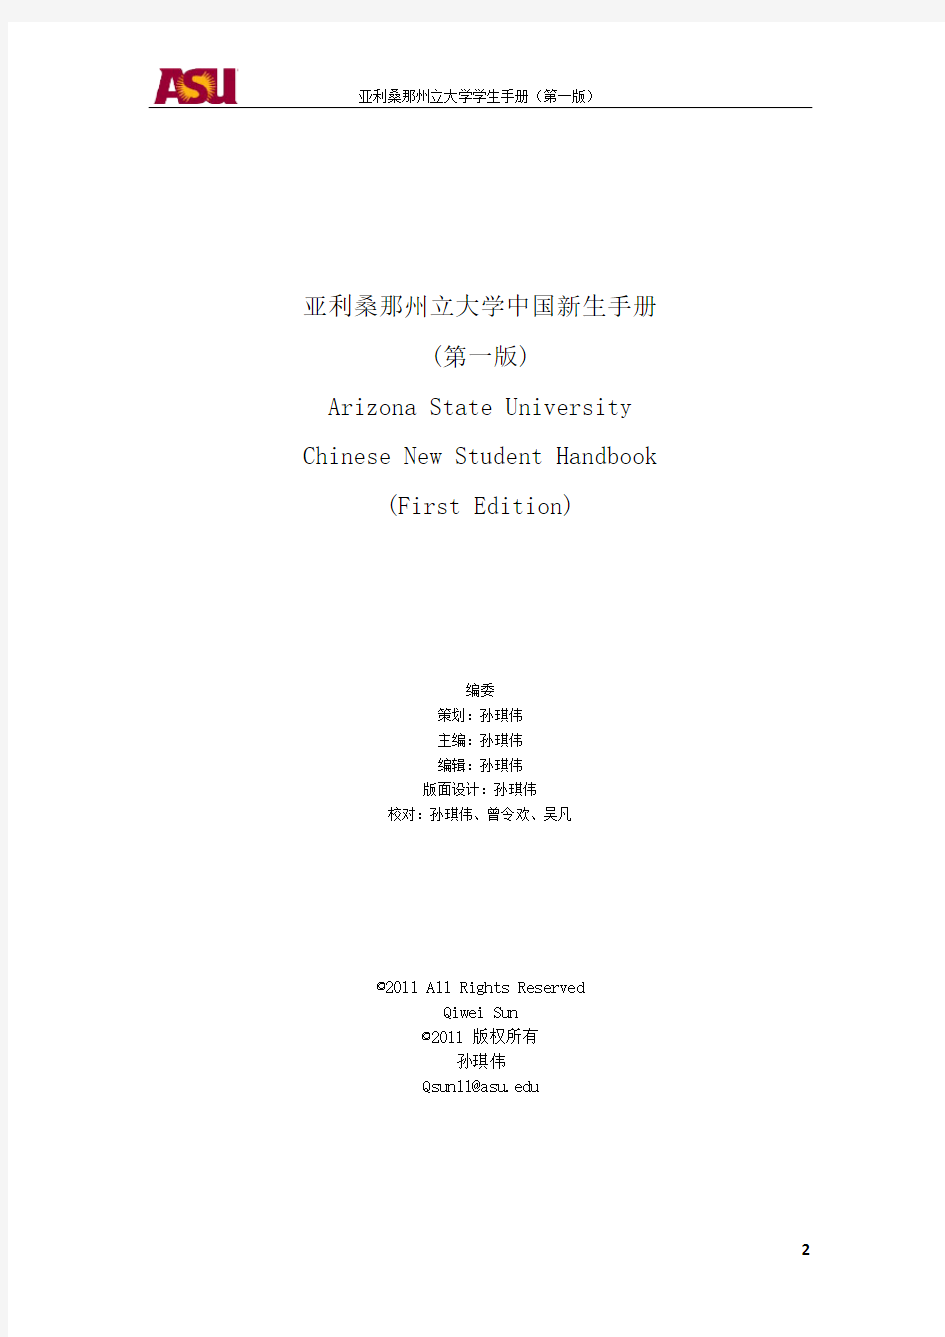 亚利桑那州立大学中国新生手册(偏本科)